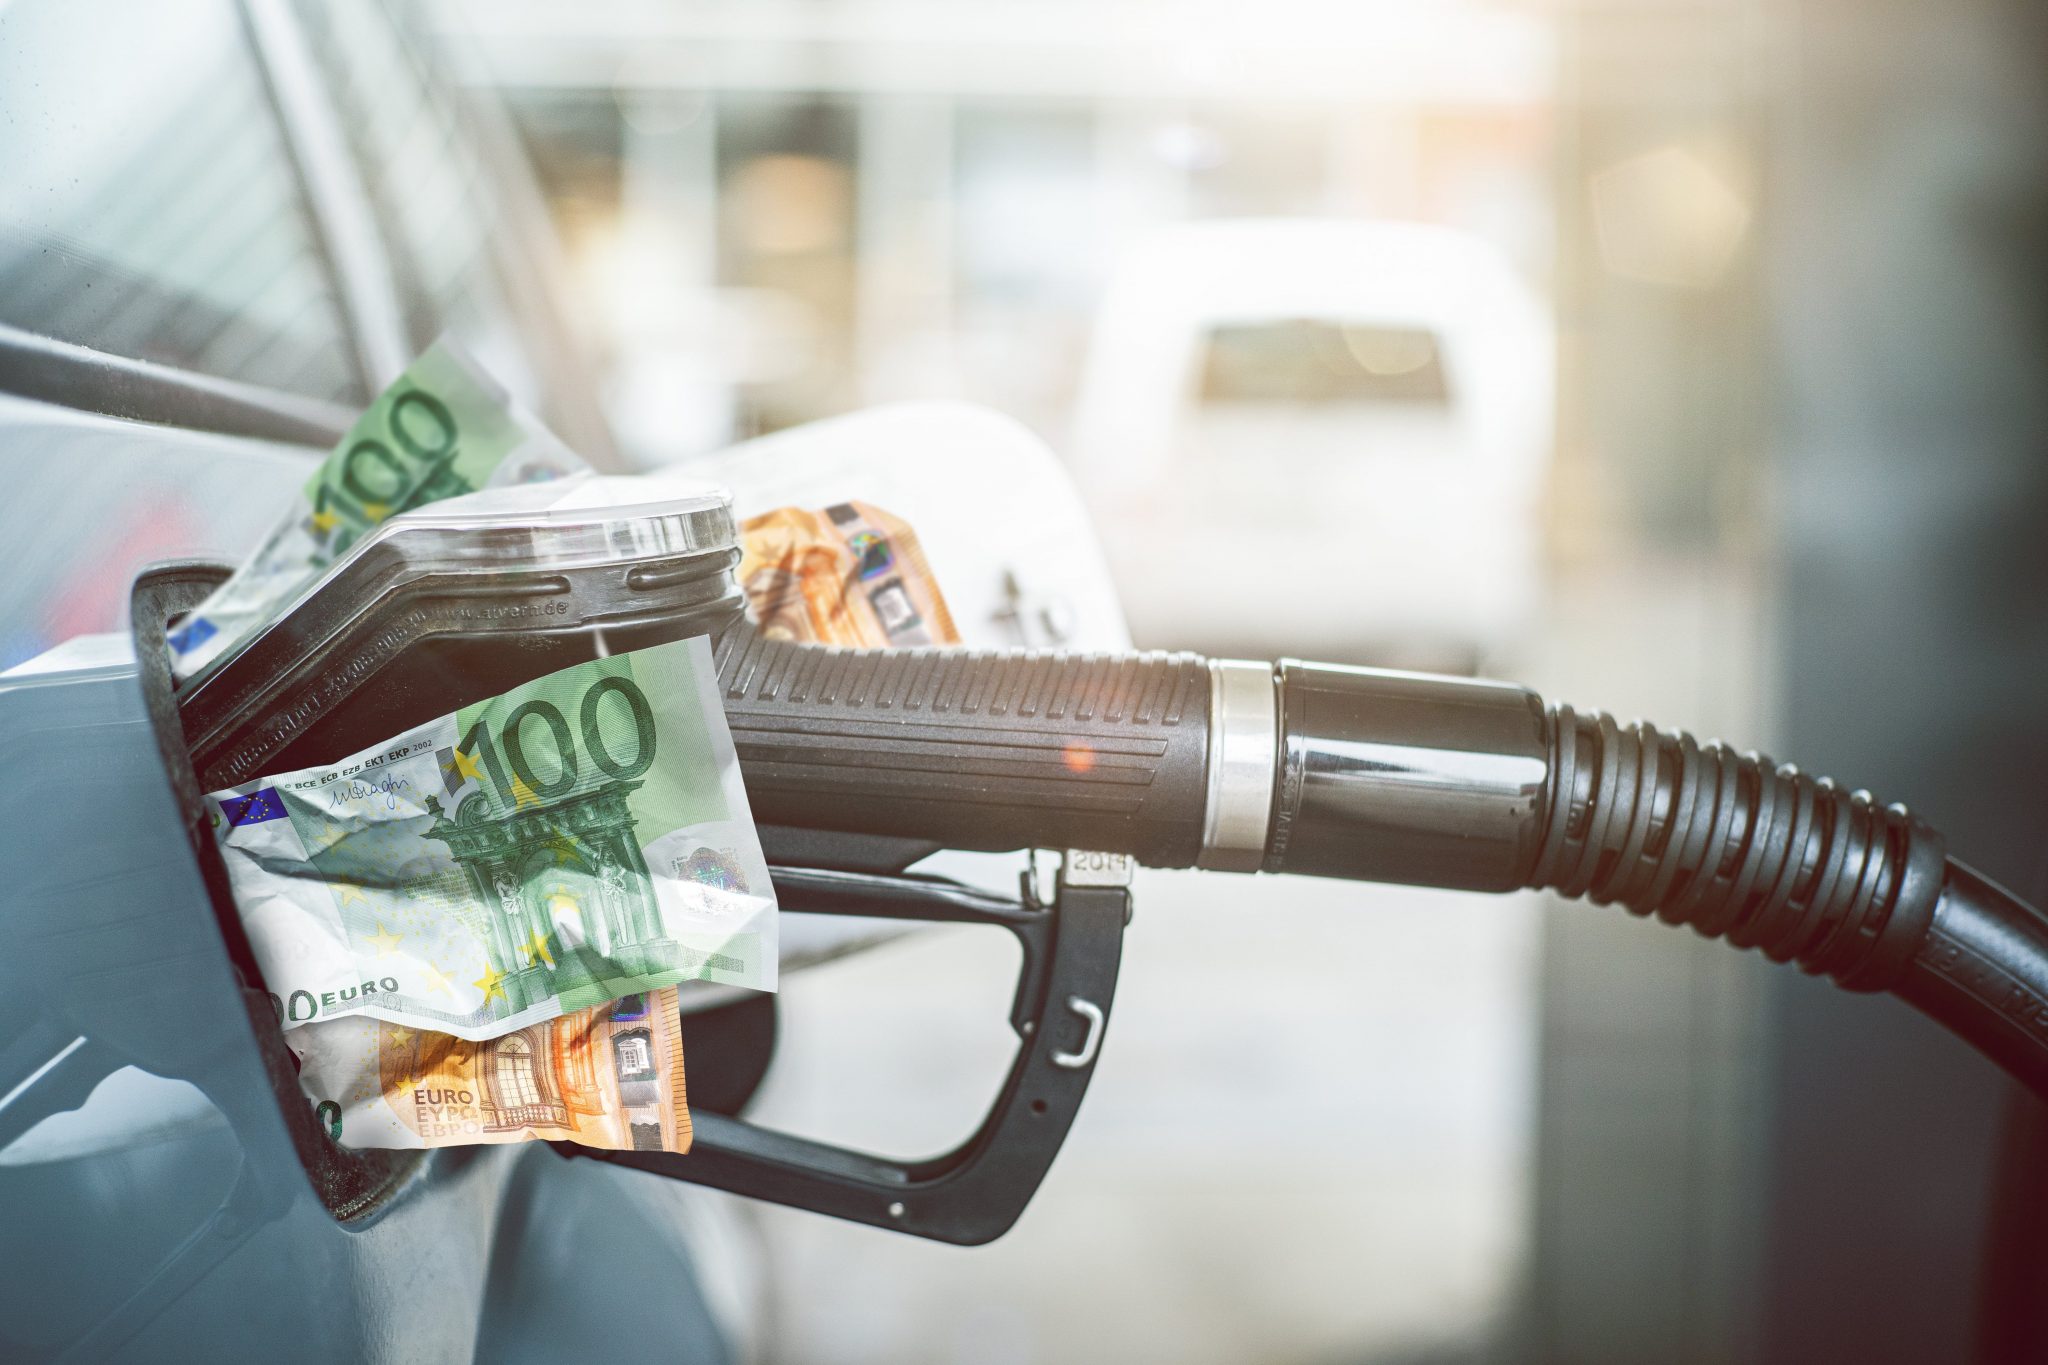 How Russia’s Invasion Of Ukraine Impacted Gasoline Prices